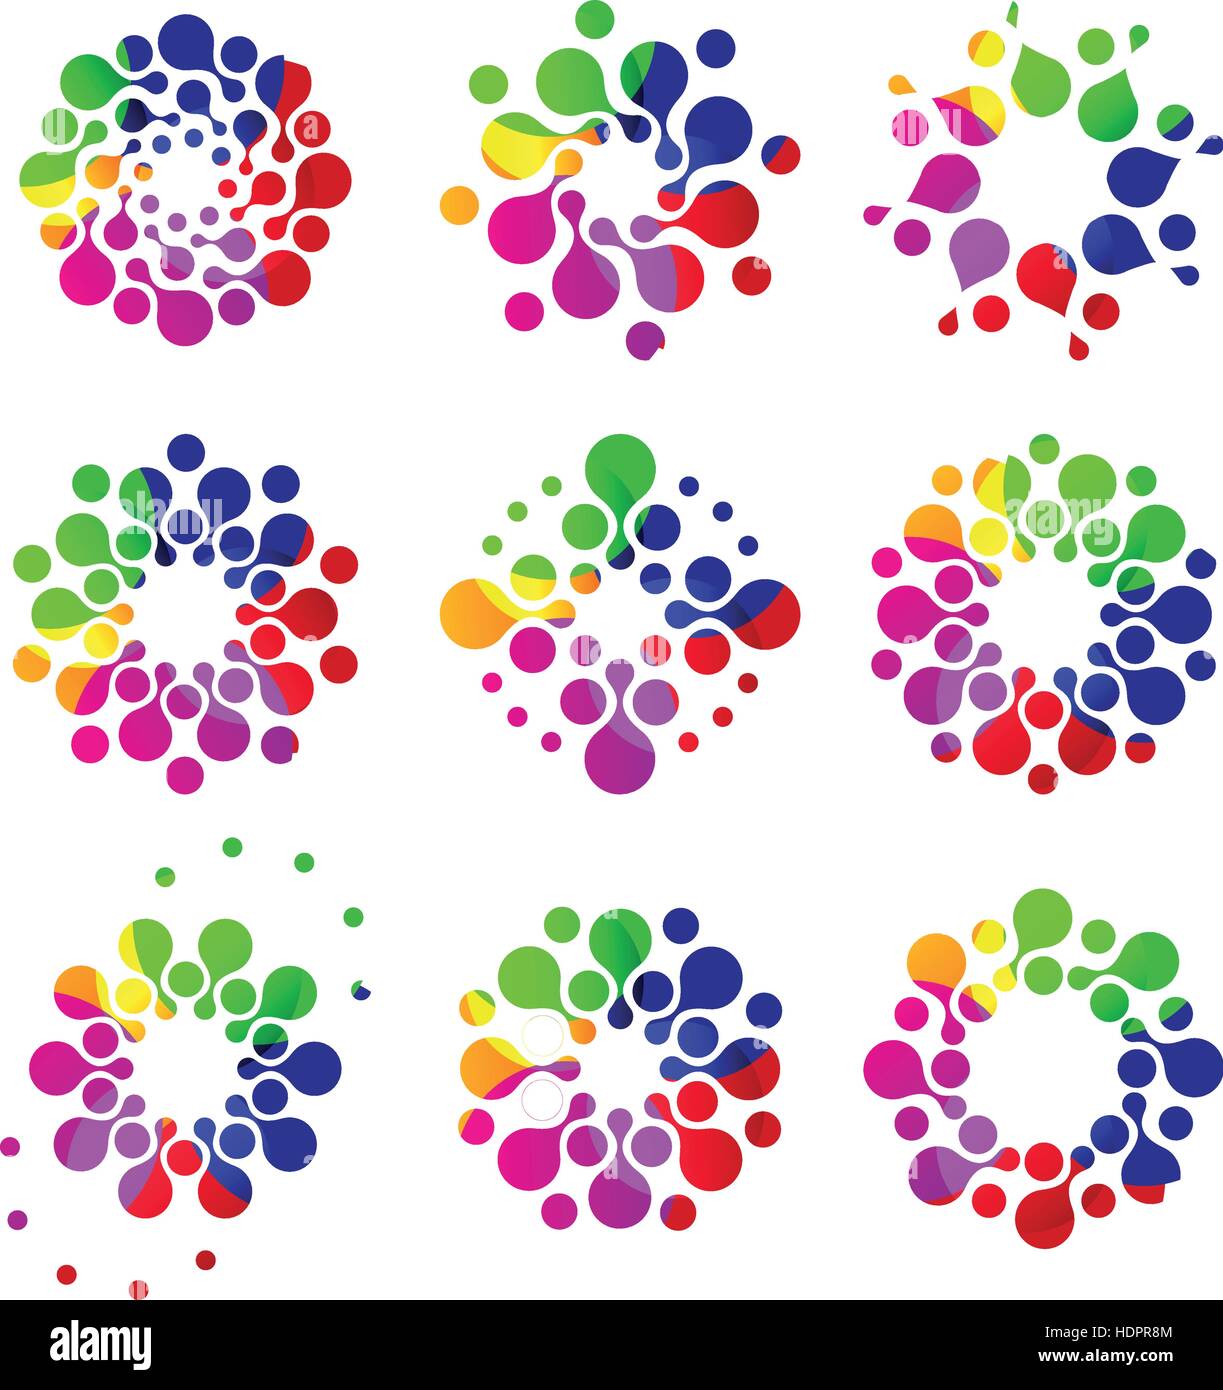 Isolato colorato astratto forma rotonda punteggiato logo collection. Flower logotipi set. Icone floreali su bianco. Segni di virus. Luminose emblemi di fuochi d'artificio. Microrganismi inusuali. Vettore sole illustrazione. Illustrazione Vettoriale